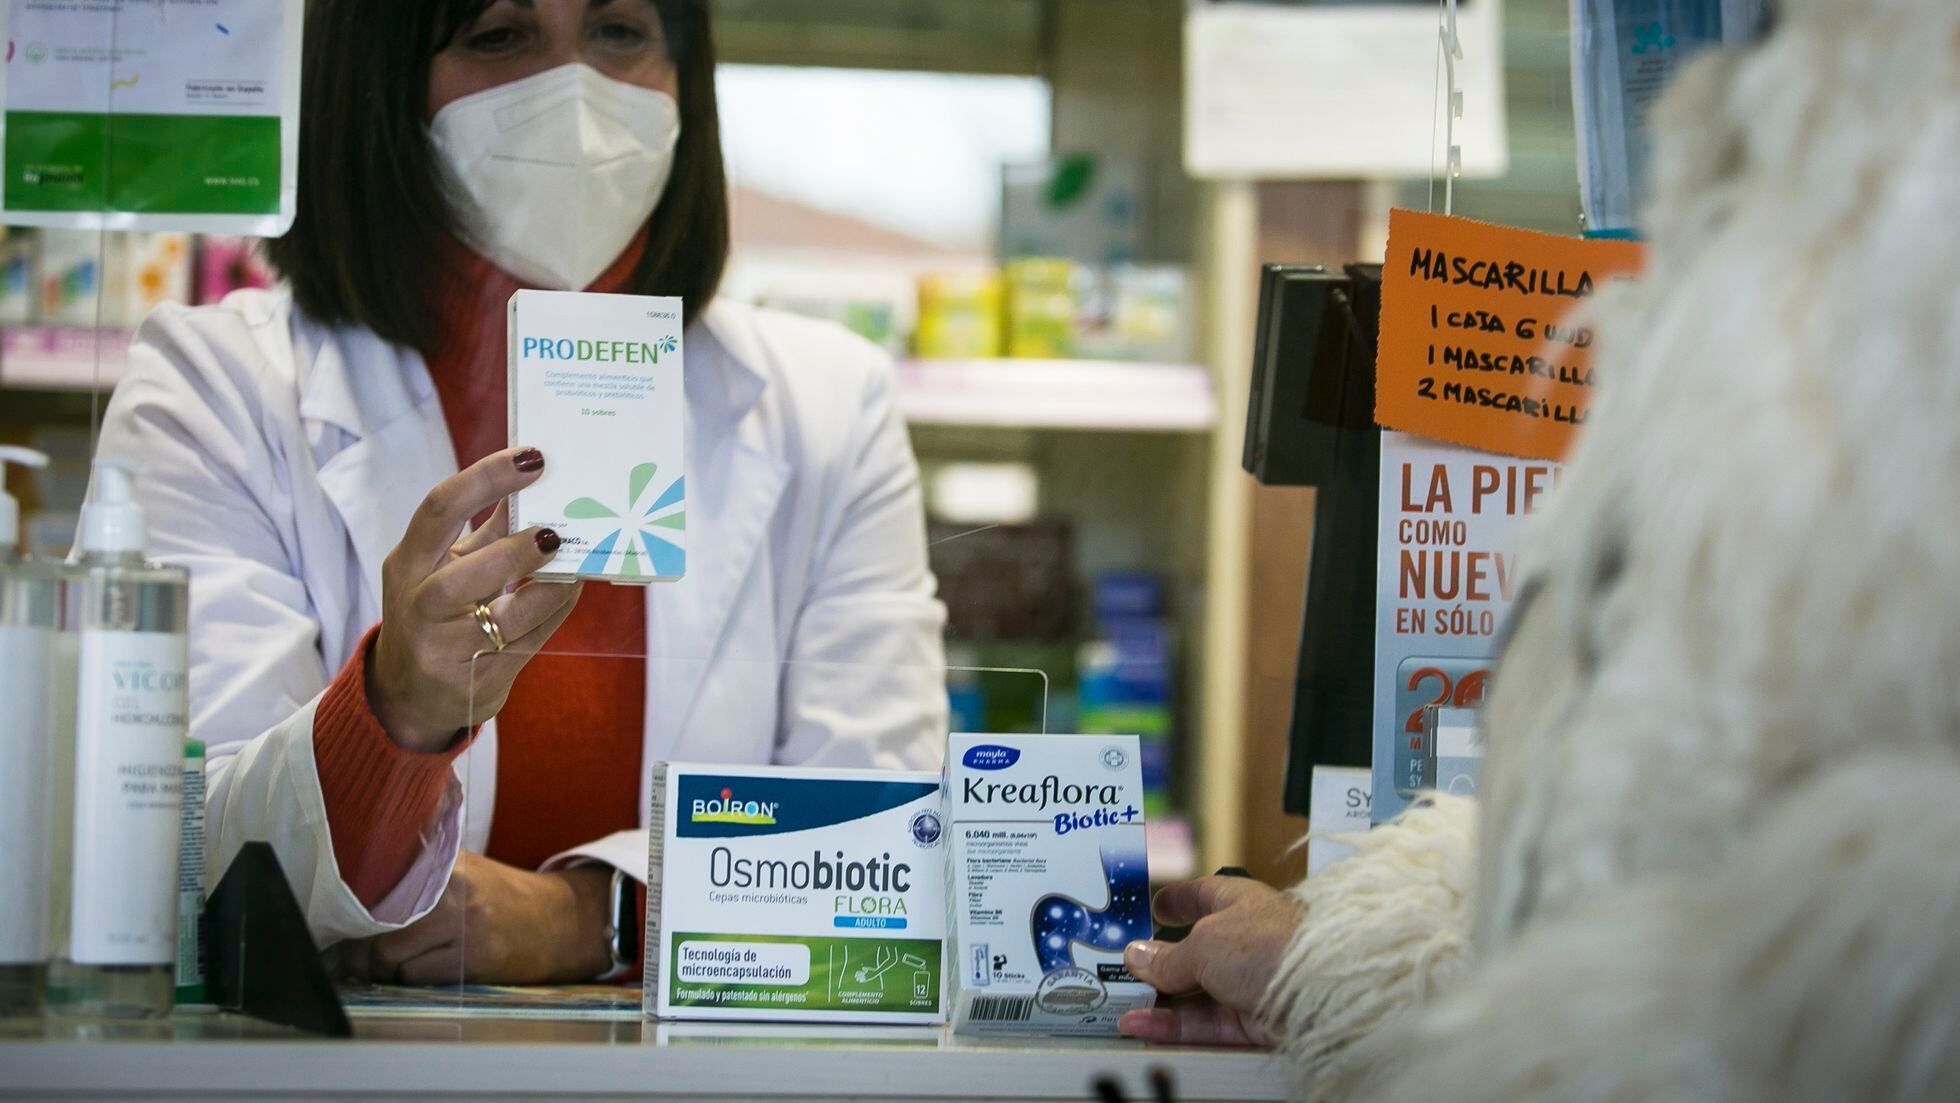 Farmacia Avenida Albacete - ¿Estás tomando antibióticos? Si es así  necesitas un probiótico para proteger tu sistema disgetivo. PRODEFEN plus  es el número 1 para defender tu flora intestinal No solo los